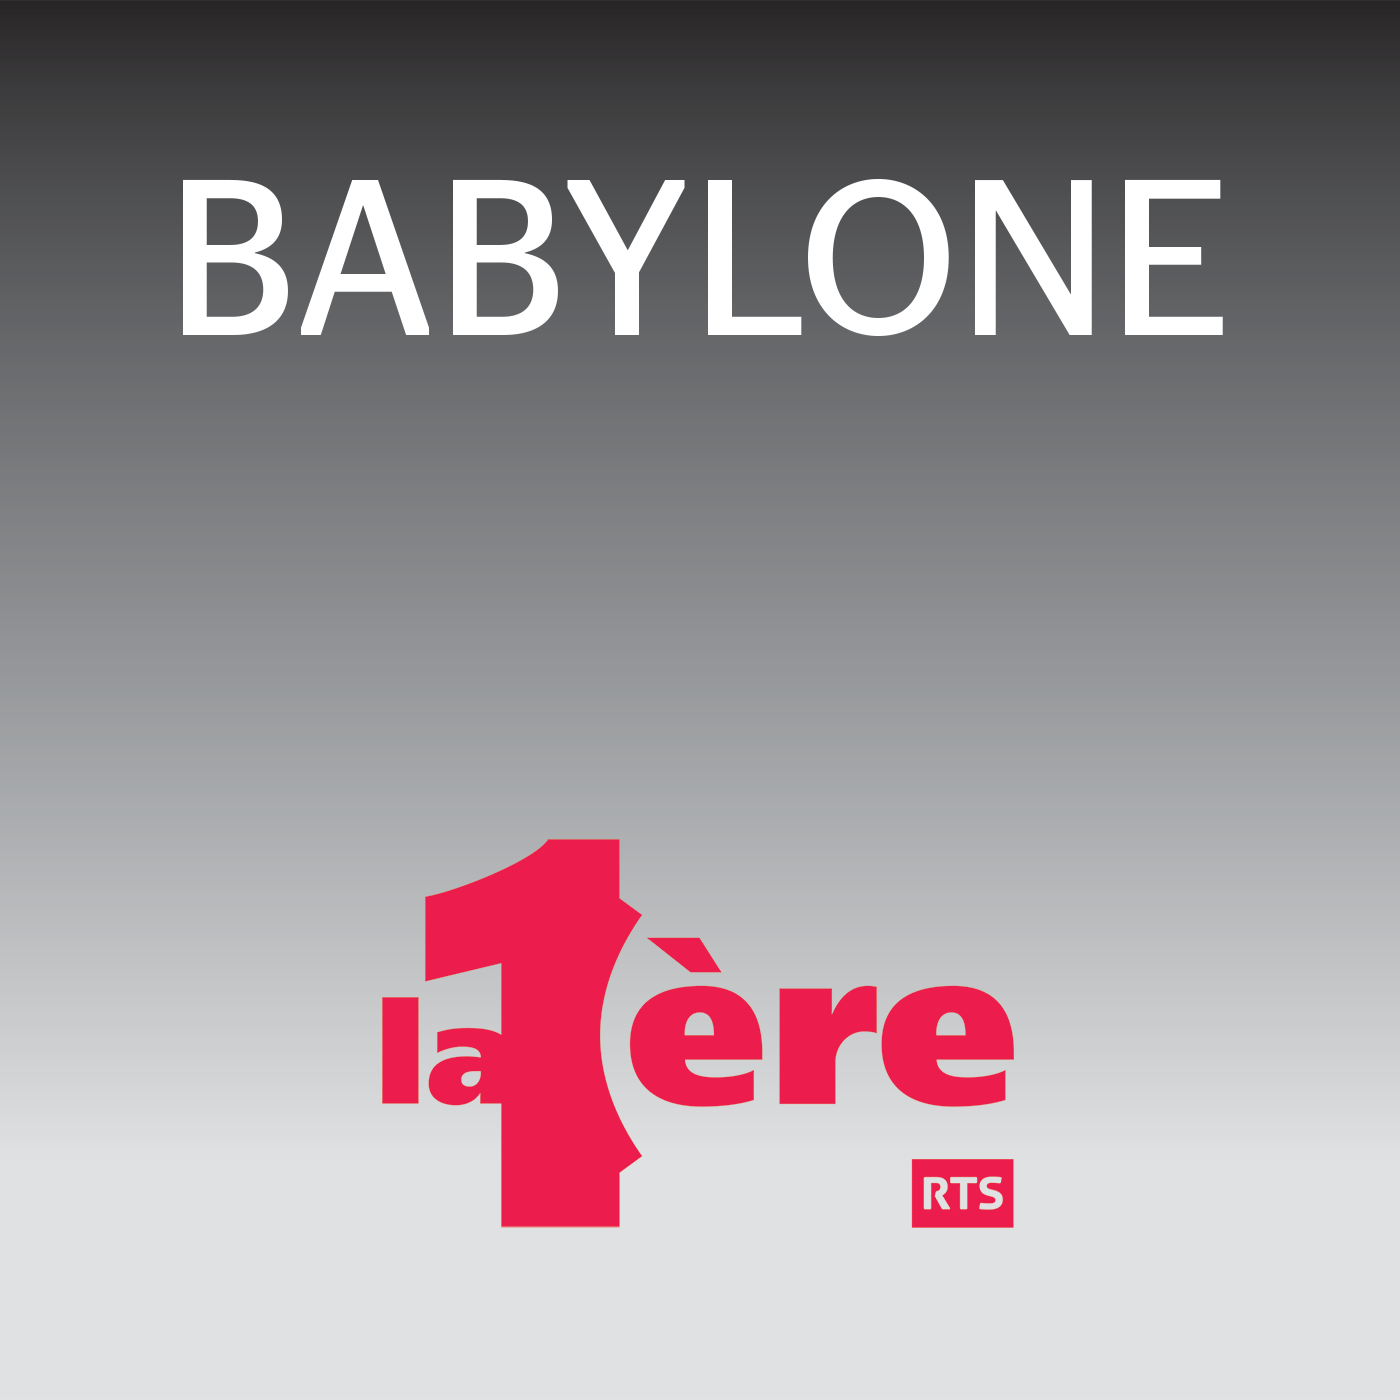 Babylone - RTS